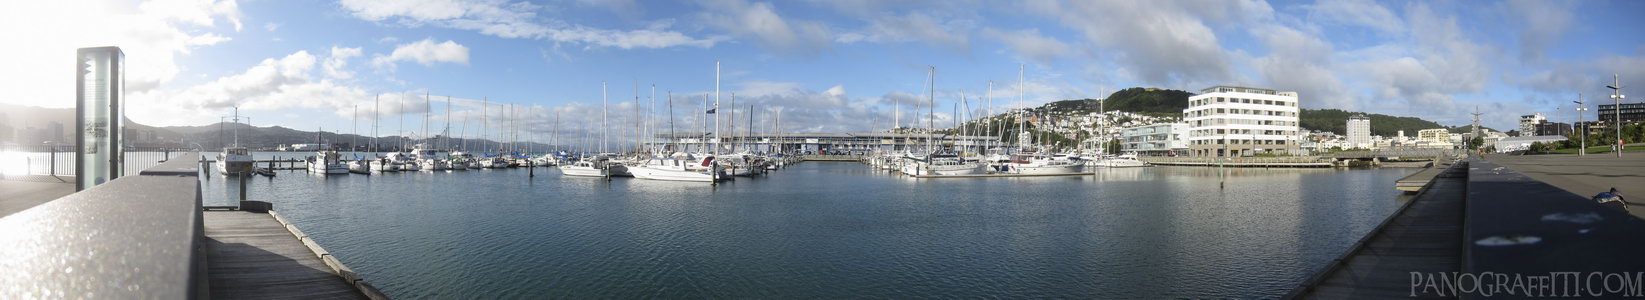 Wellington Harbor From Waitangi Park - Boats at dock near Waitangi Park